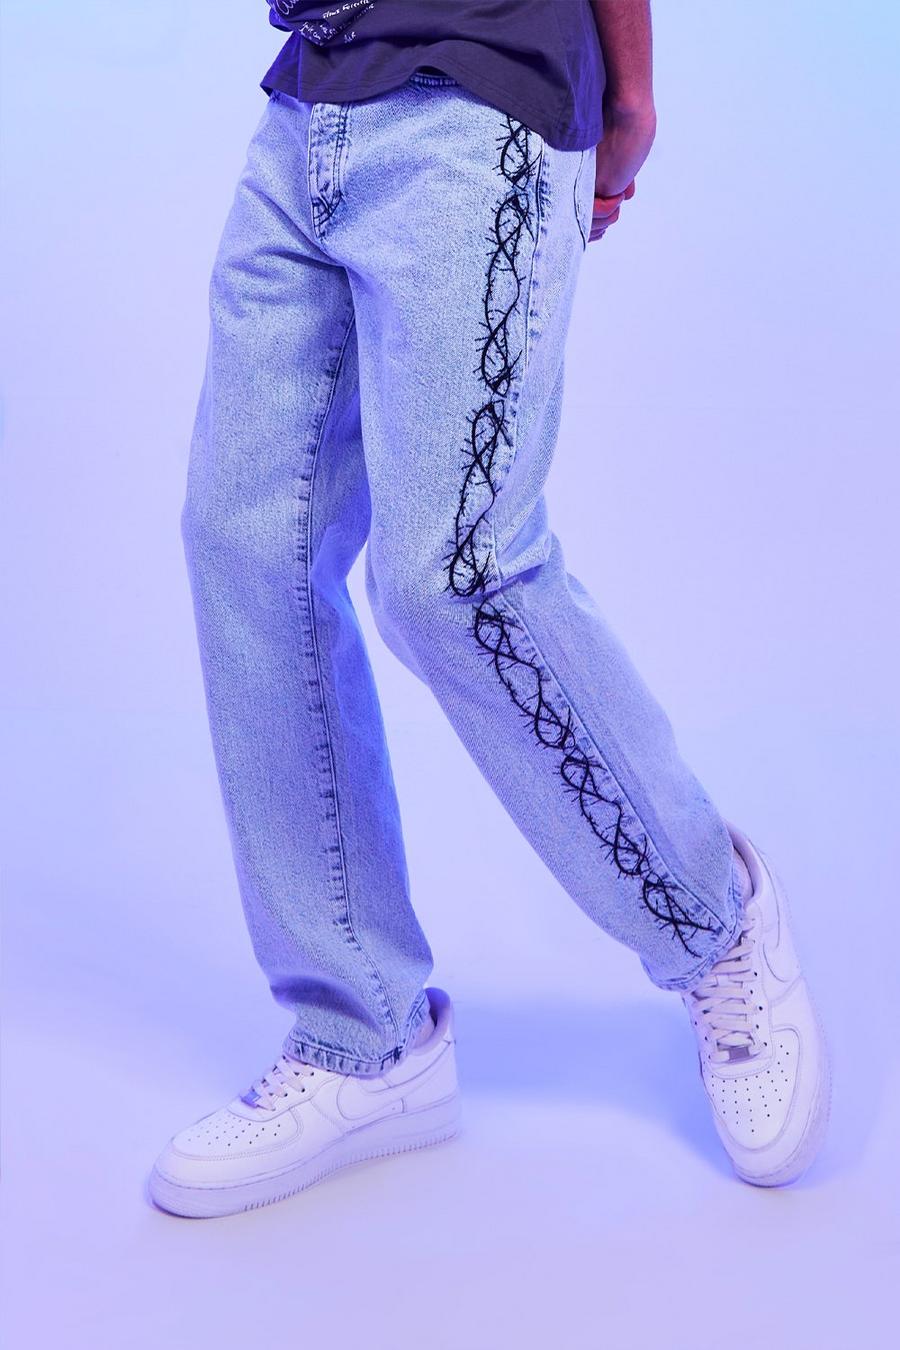 כחול קרח ג'ינס מבד קשיח עם רקמה בגזרה משוחררת